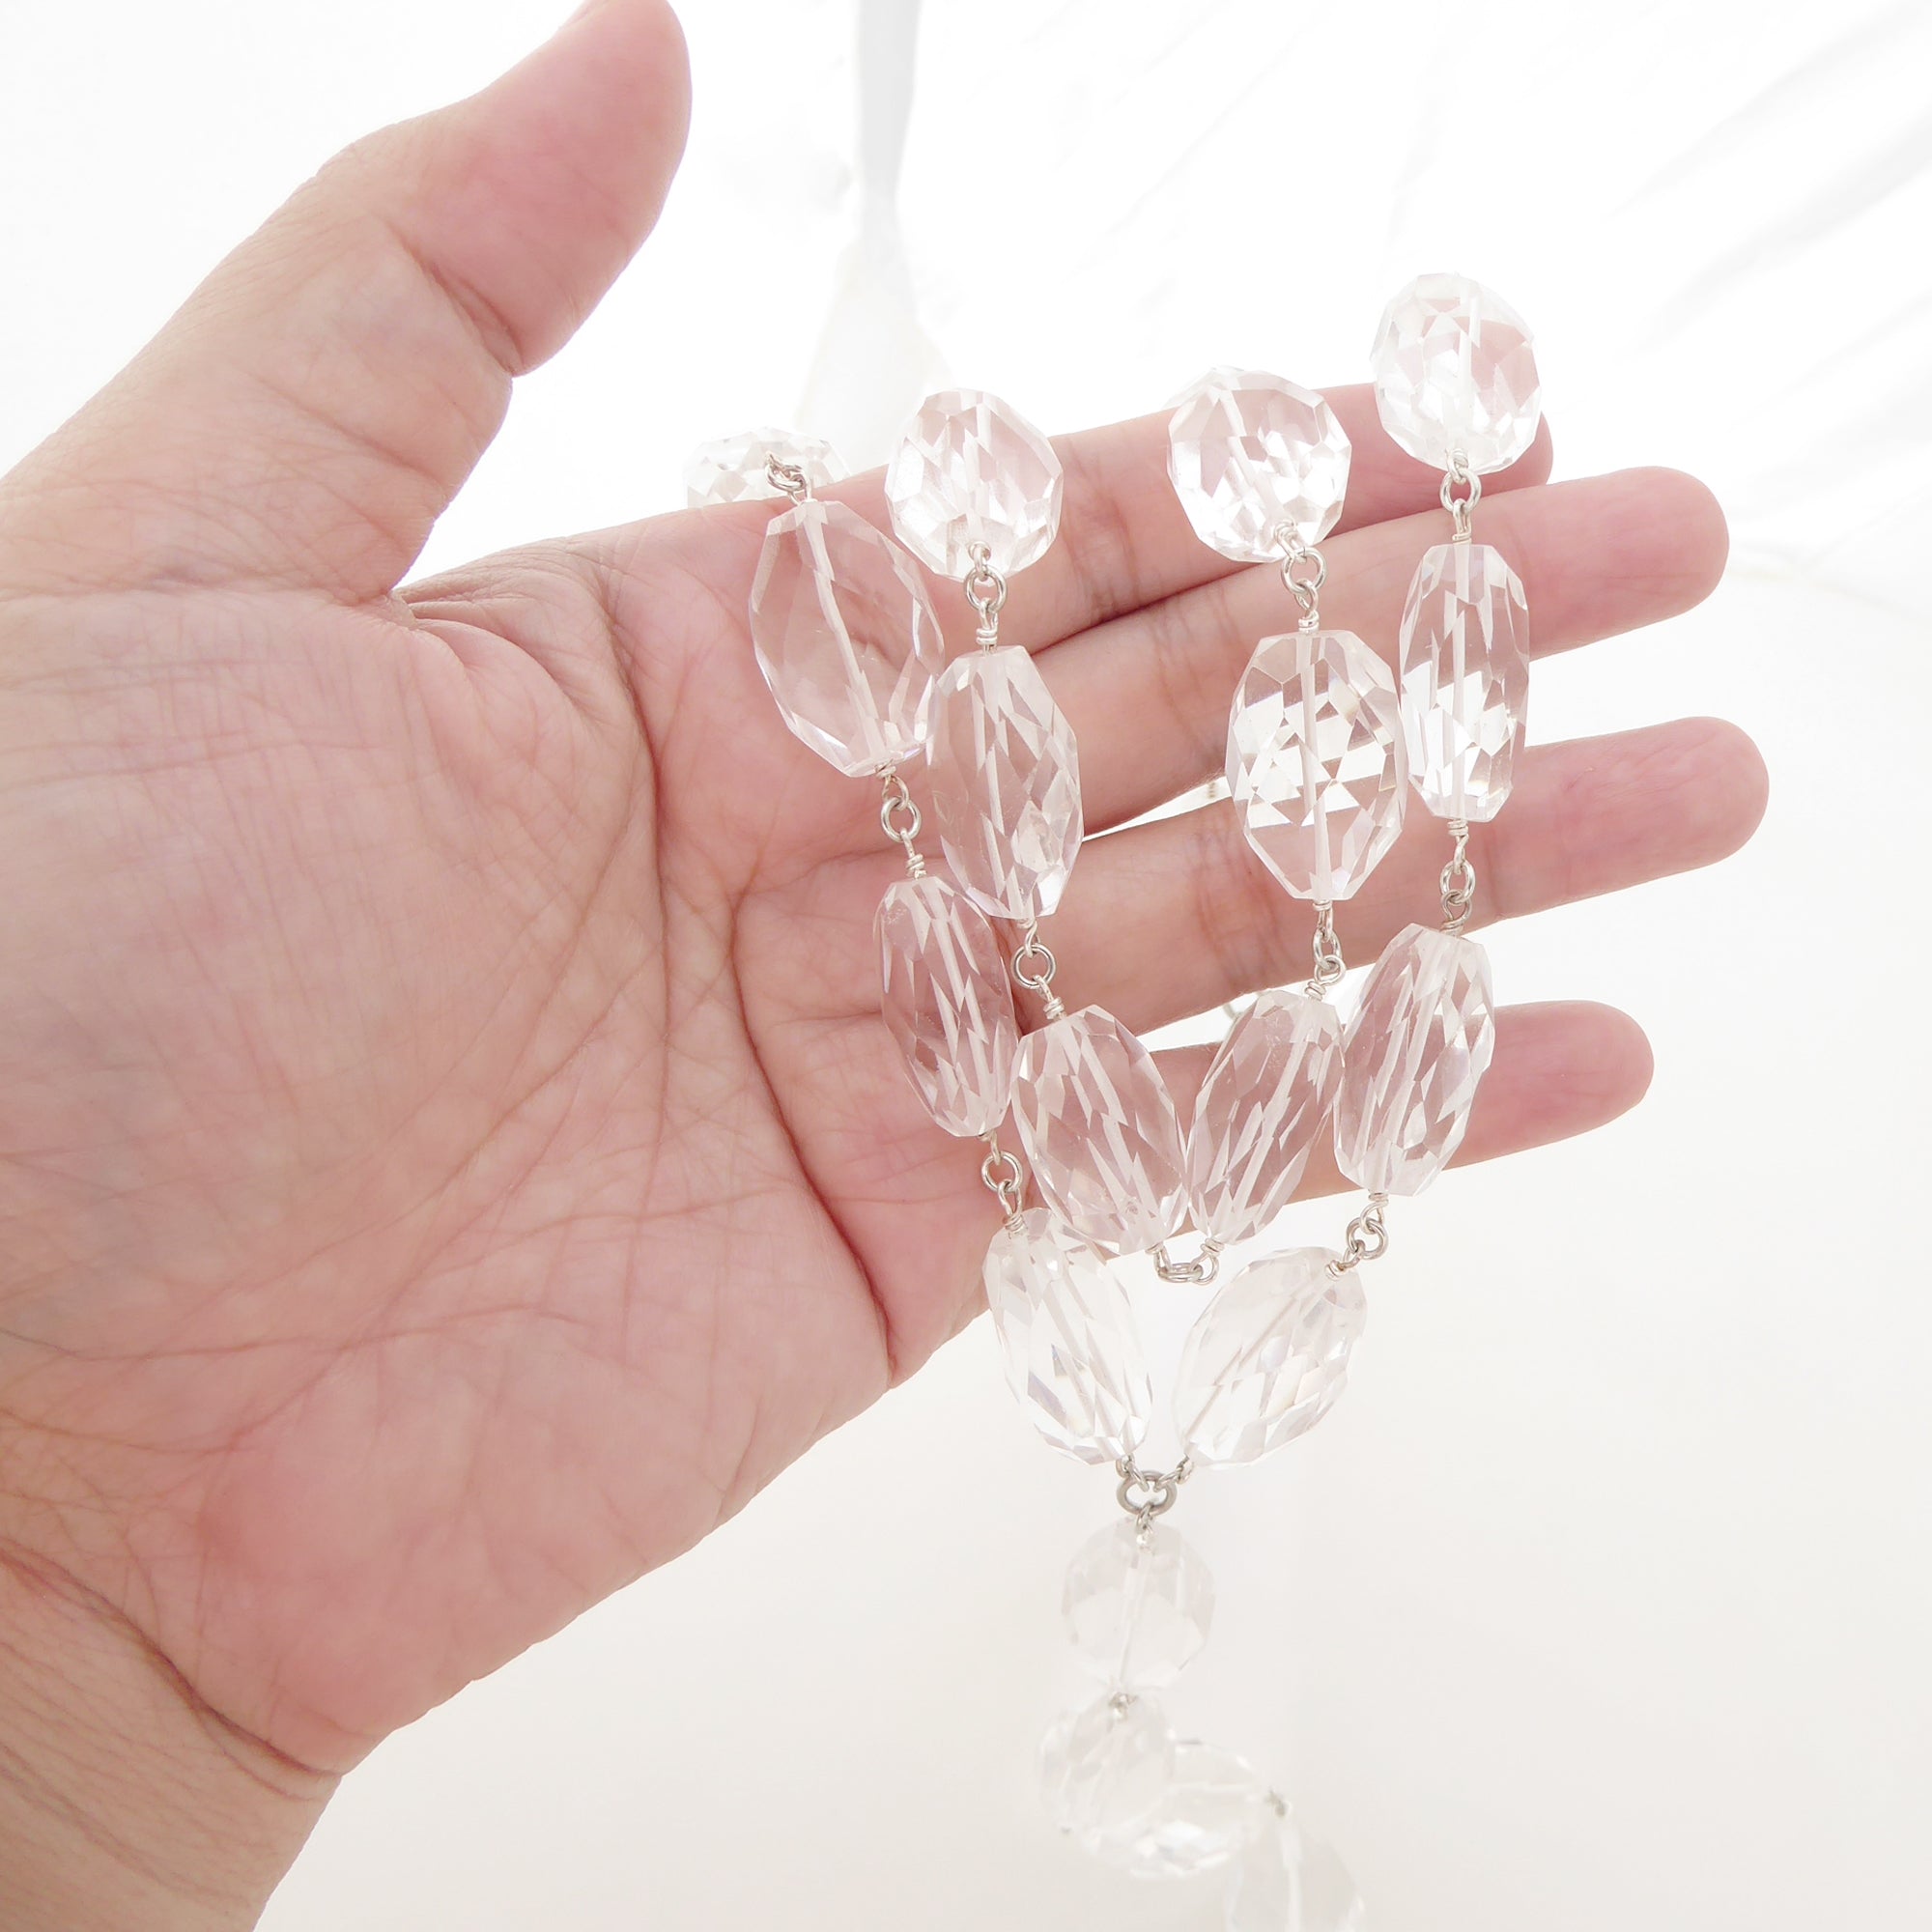 Rock crystal necklace by Jenny Dayco 7